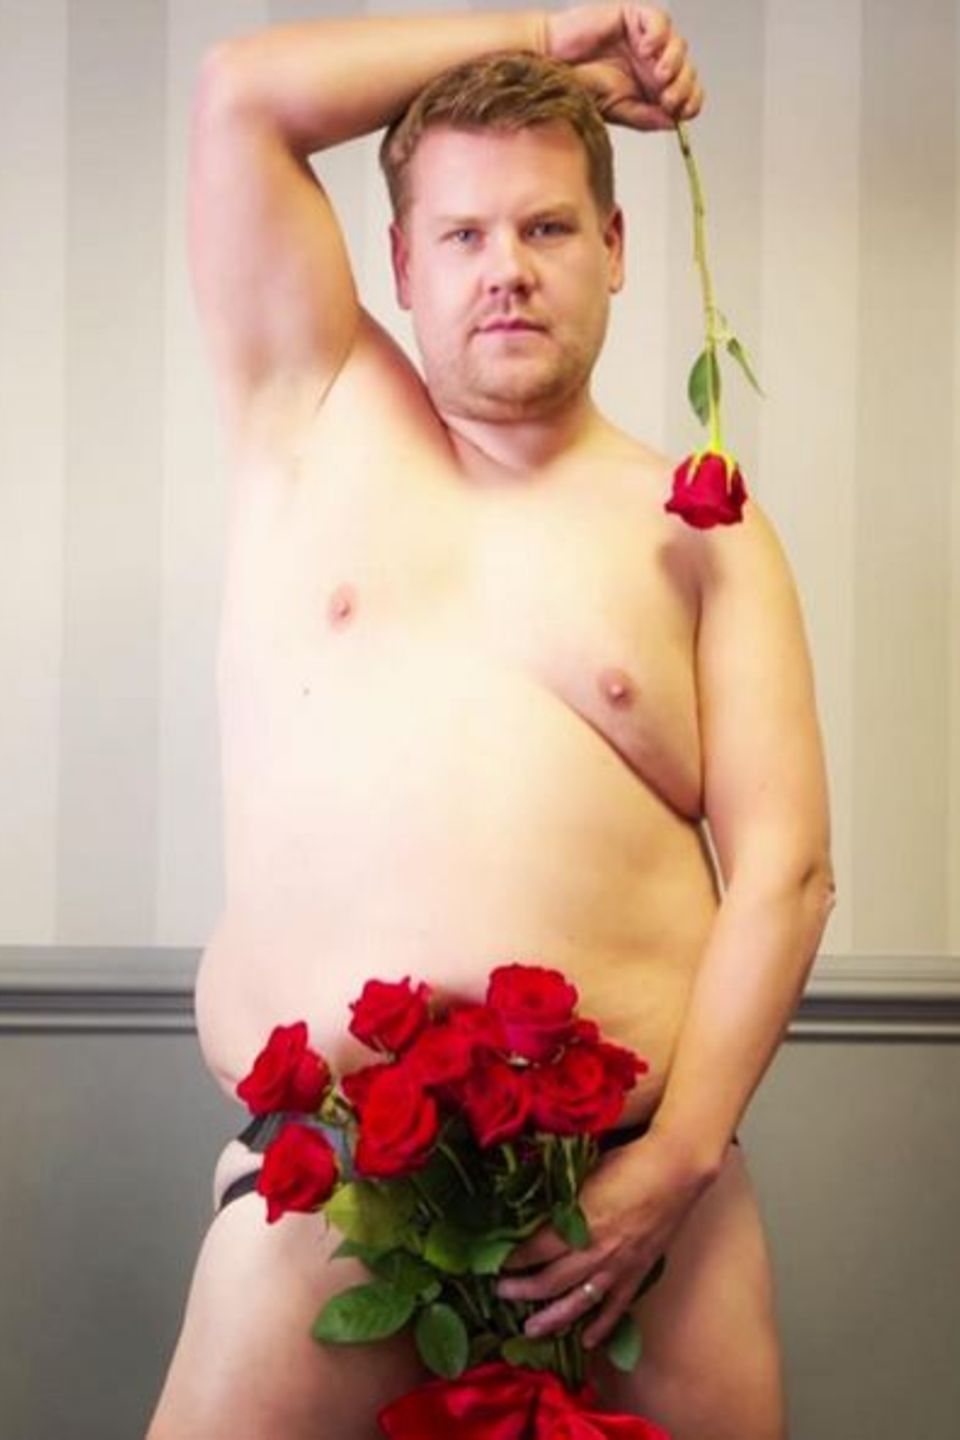 August 2016  "Rosenkavalier" James Corden zieht blank und posiert nackt für seine Fans. Nur sein bestes Stück wird von einem Strauß roter Rosen bedeckt.